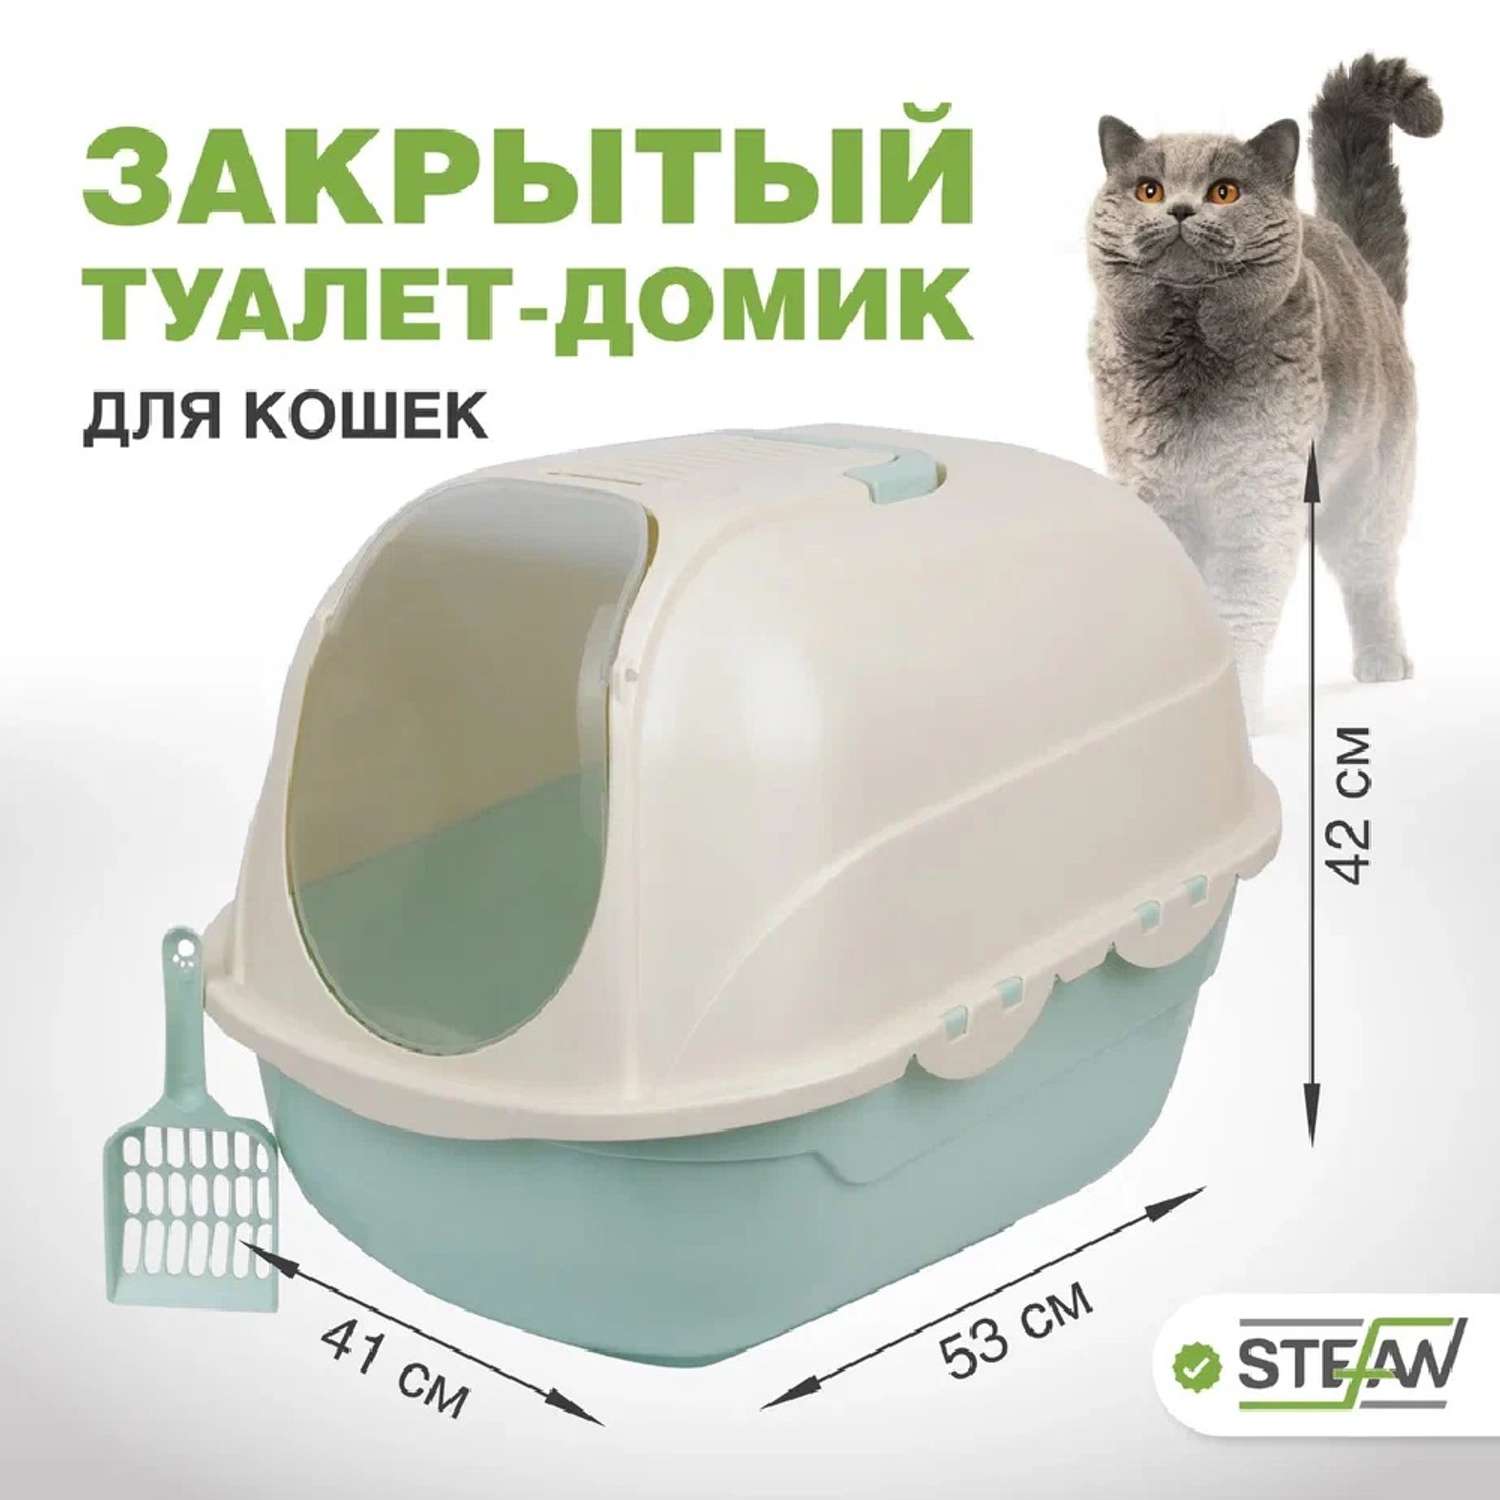 Туалет домик лоток для кошек Stefan закрытый совок в комплекте 53х41х42cm бирюзовый - фото 1